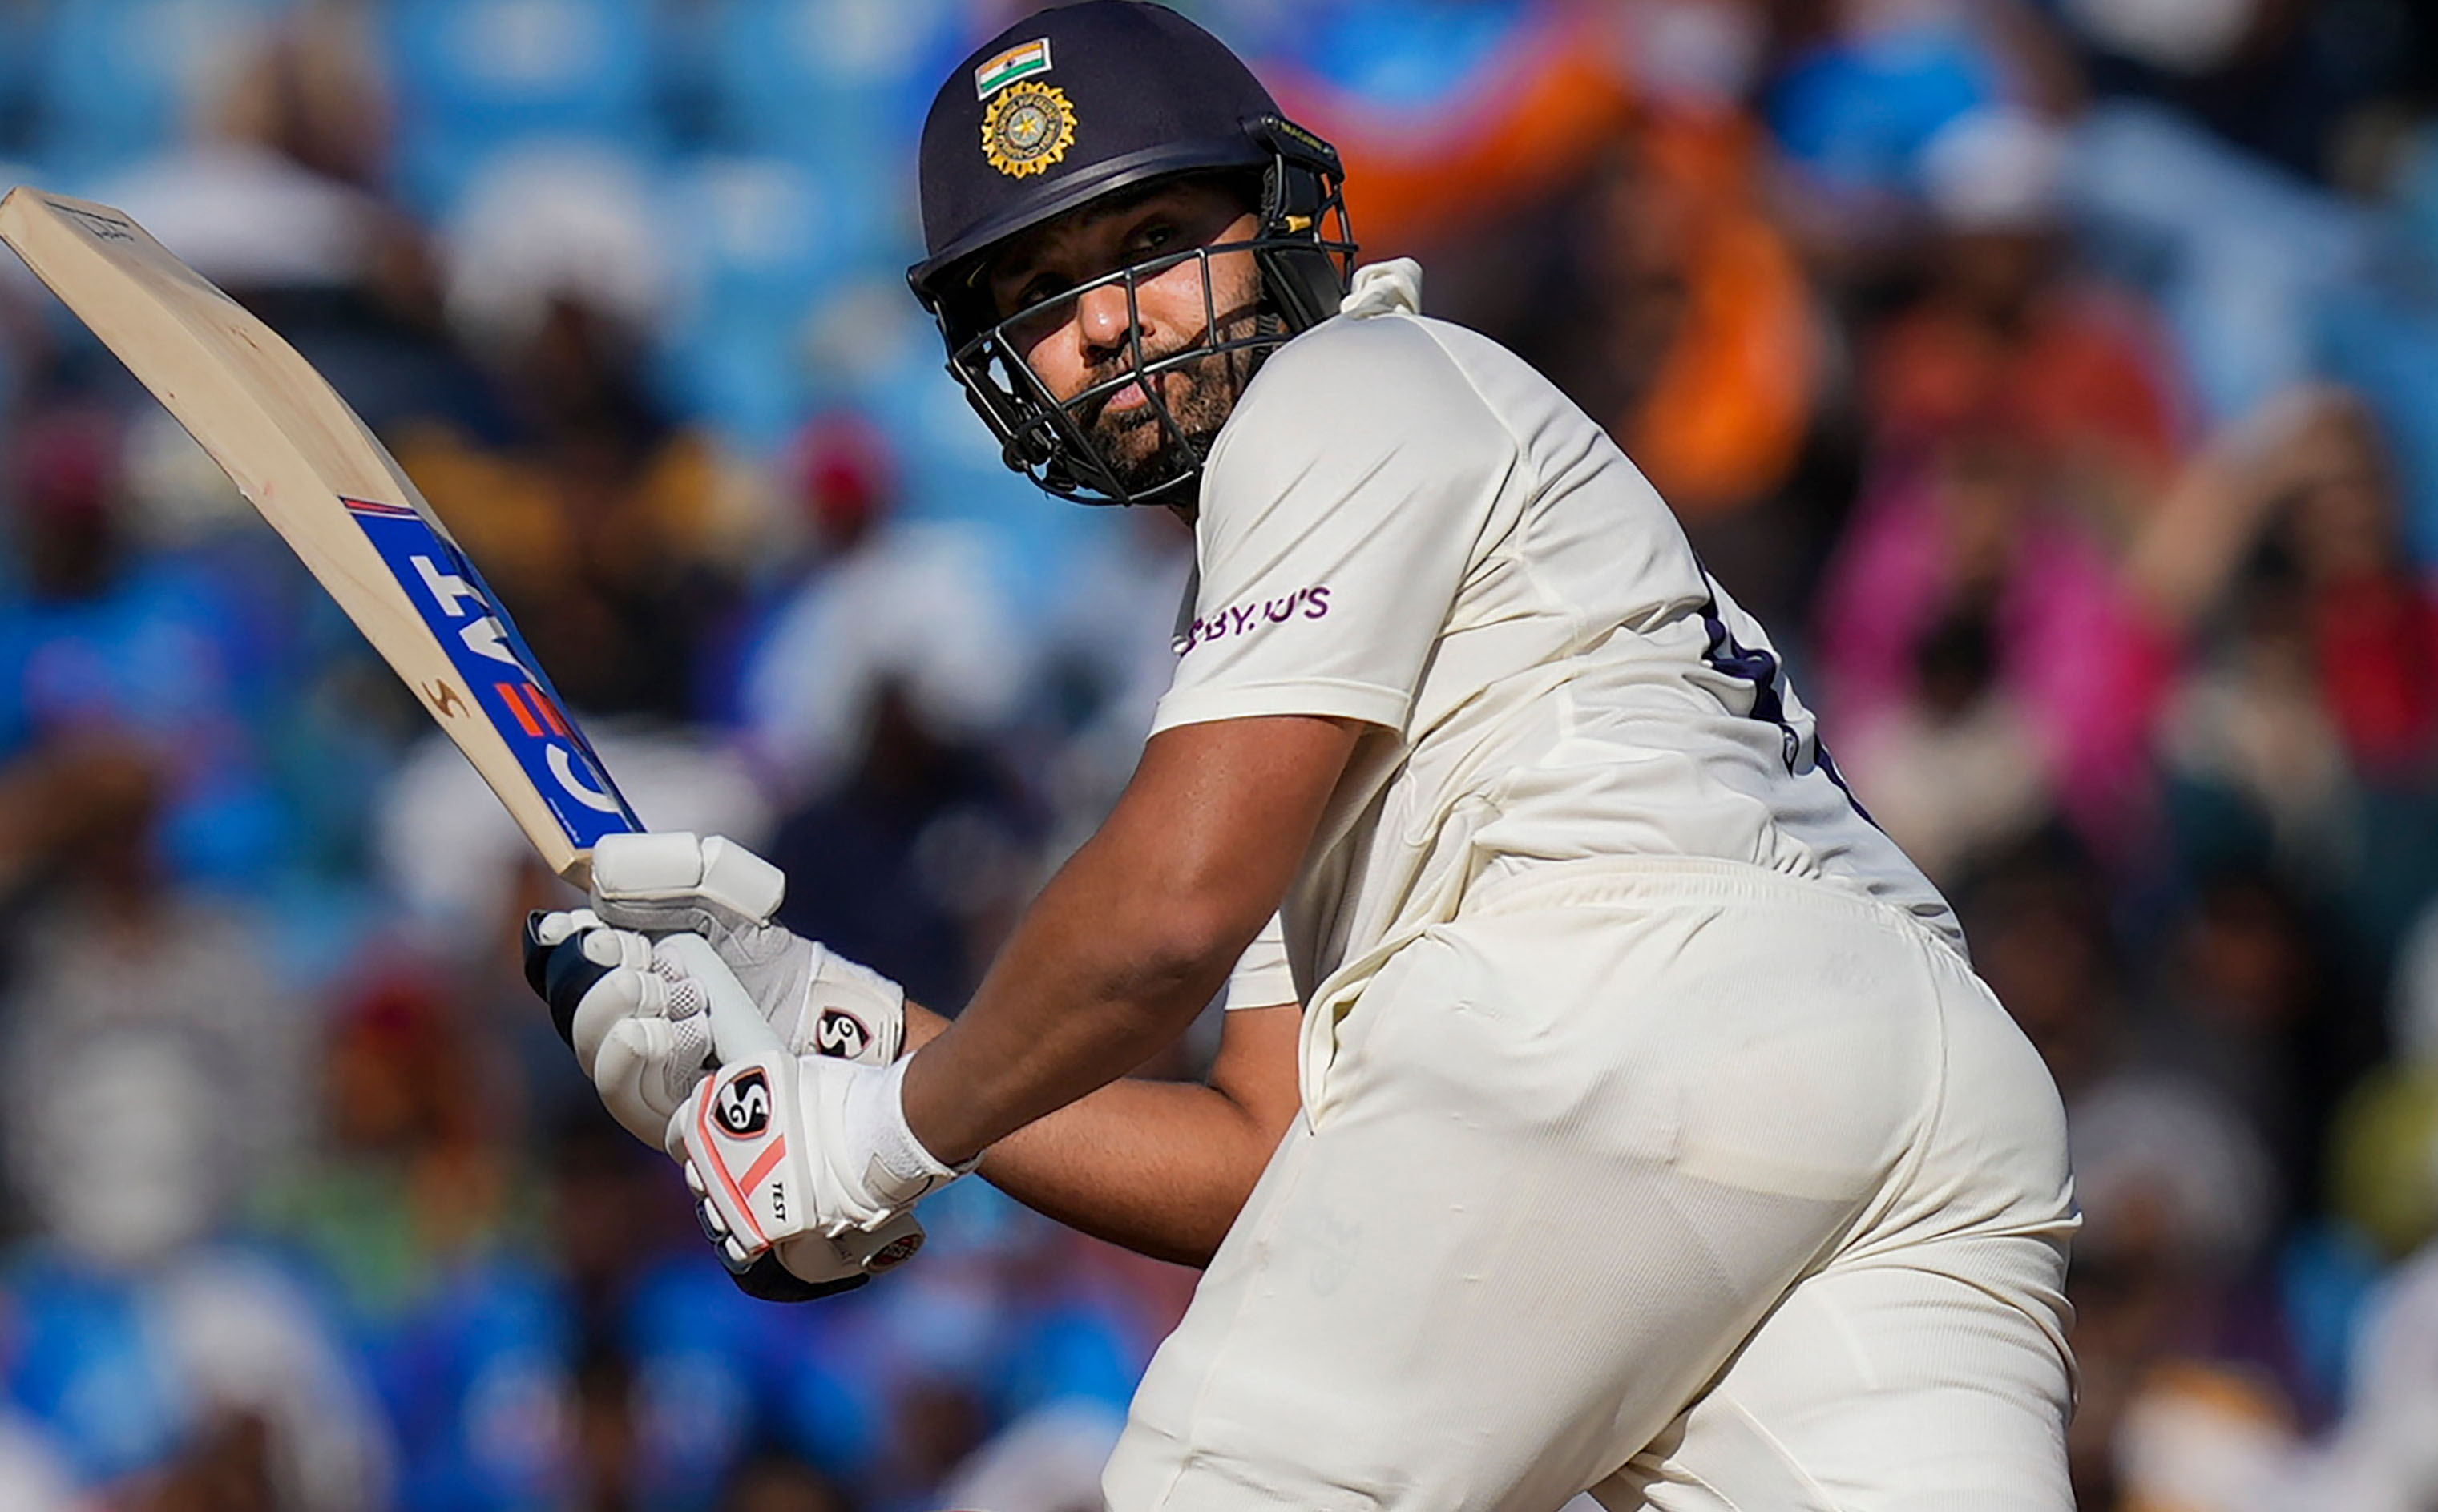 नागपुुर टेस्ट का दूसरा दिन: टीम इंडिया को आस्ट्रेलिया पर 144 की बढ़त, स्कोर 321/7, रोहित का शतक, जडेजा-अक्षर की हॉफ सेंचुरी